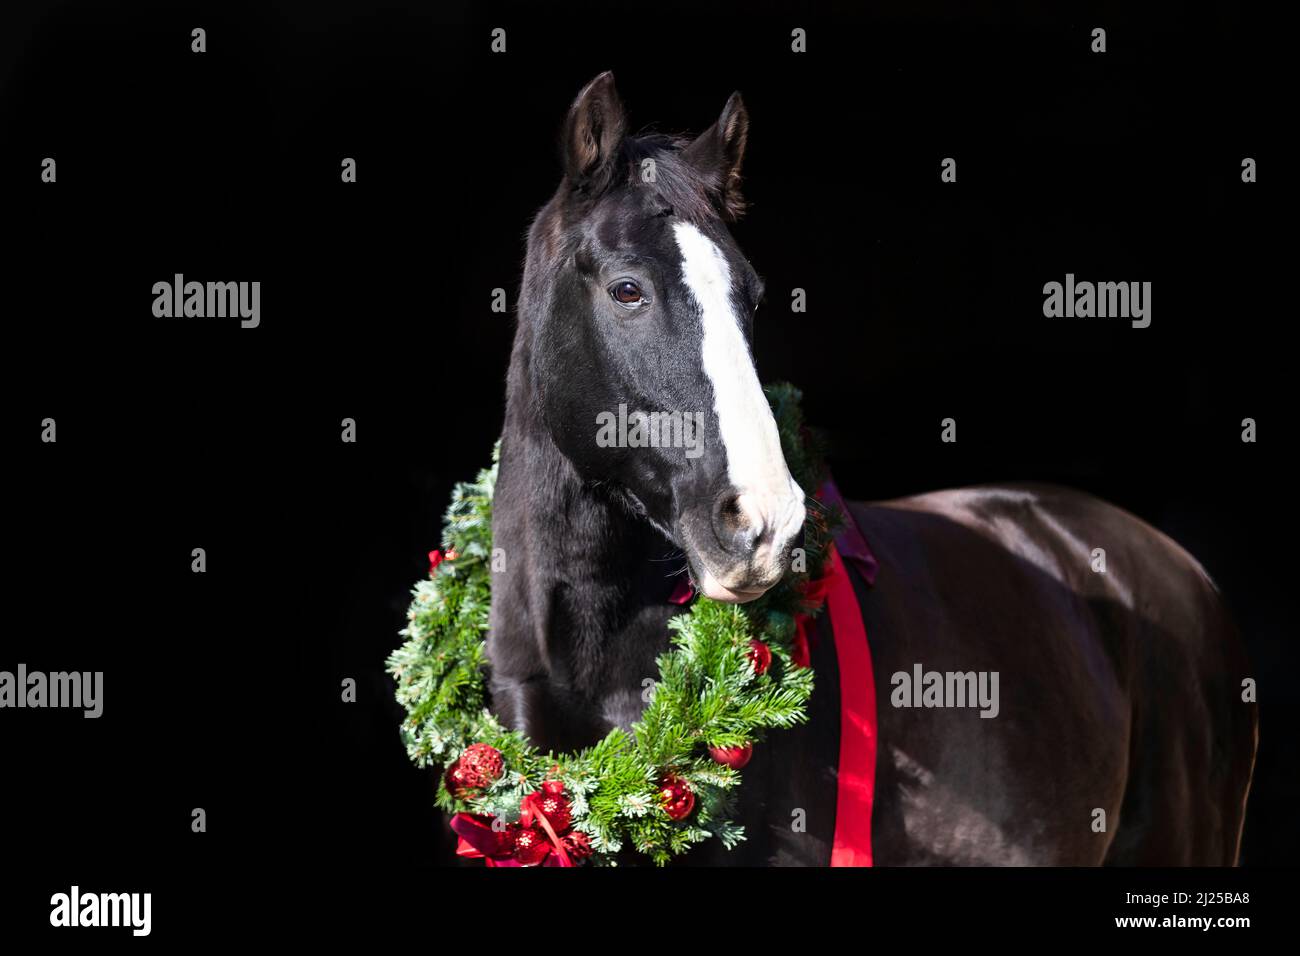 Oldenburger Pferd. Porträt eines schwarzen Seniorpferdes mit einem Weihnachtskranz vor schwarzem Hintergrund Stockfoto